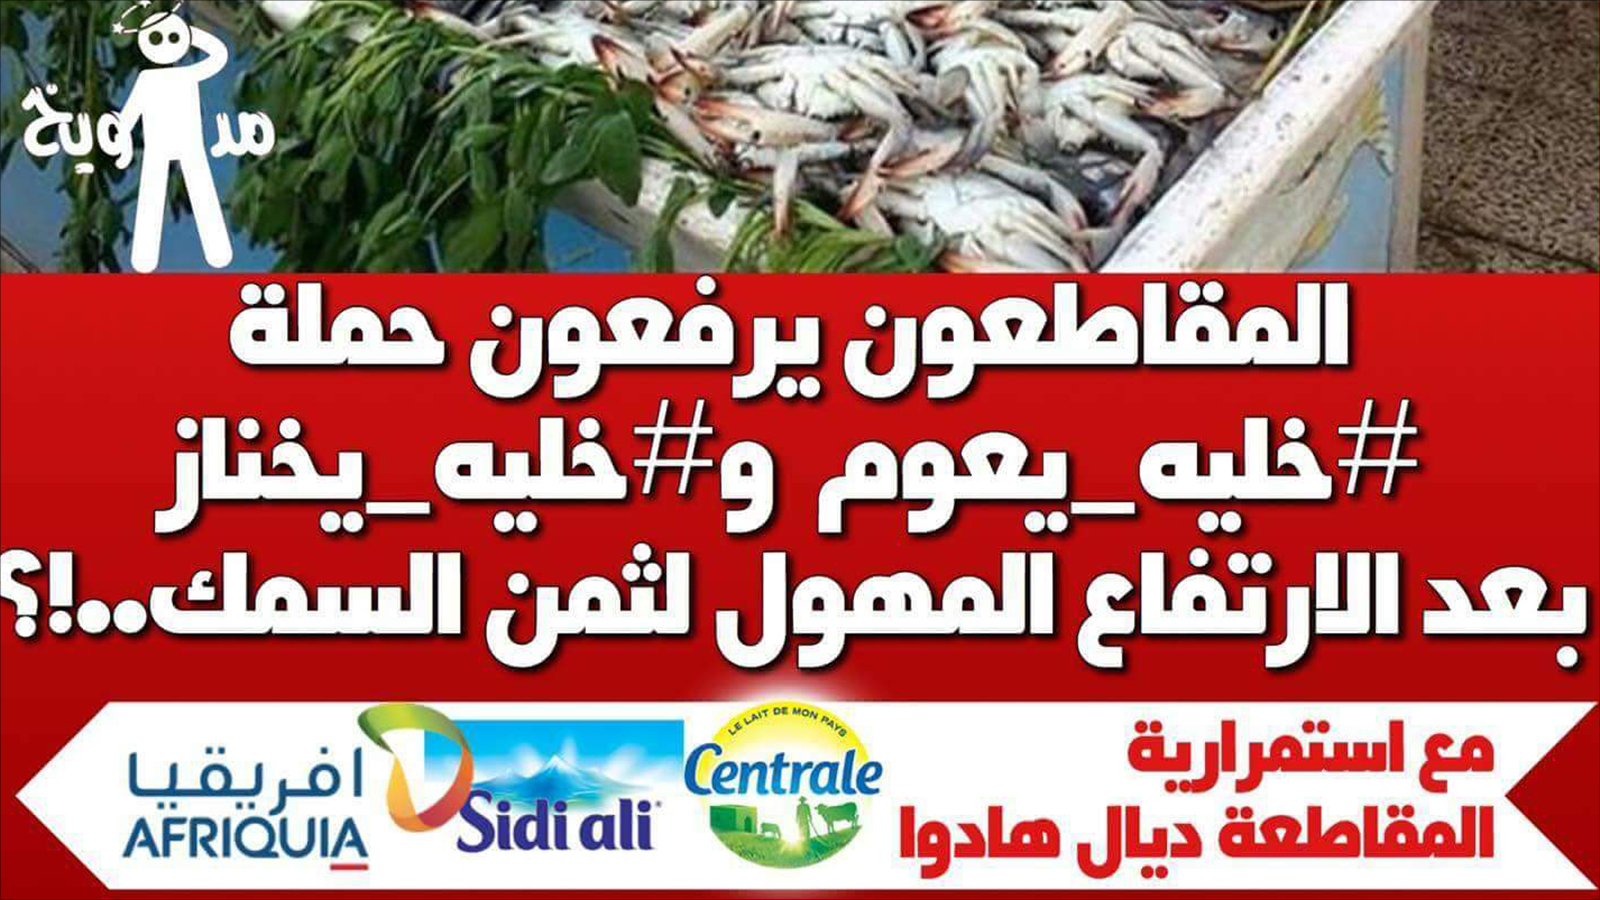 ‪نشطاء في مواقع التواصل الاجتماعي يتداولون نداءات لمقاطعة شراء الأسماك‬ (الجزيرة)